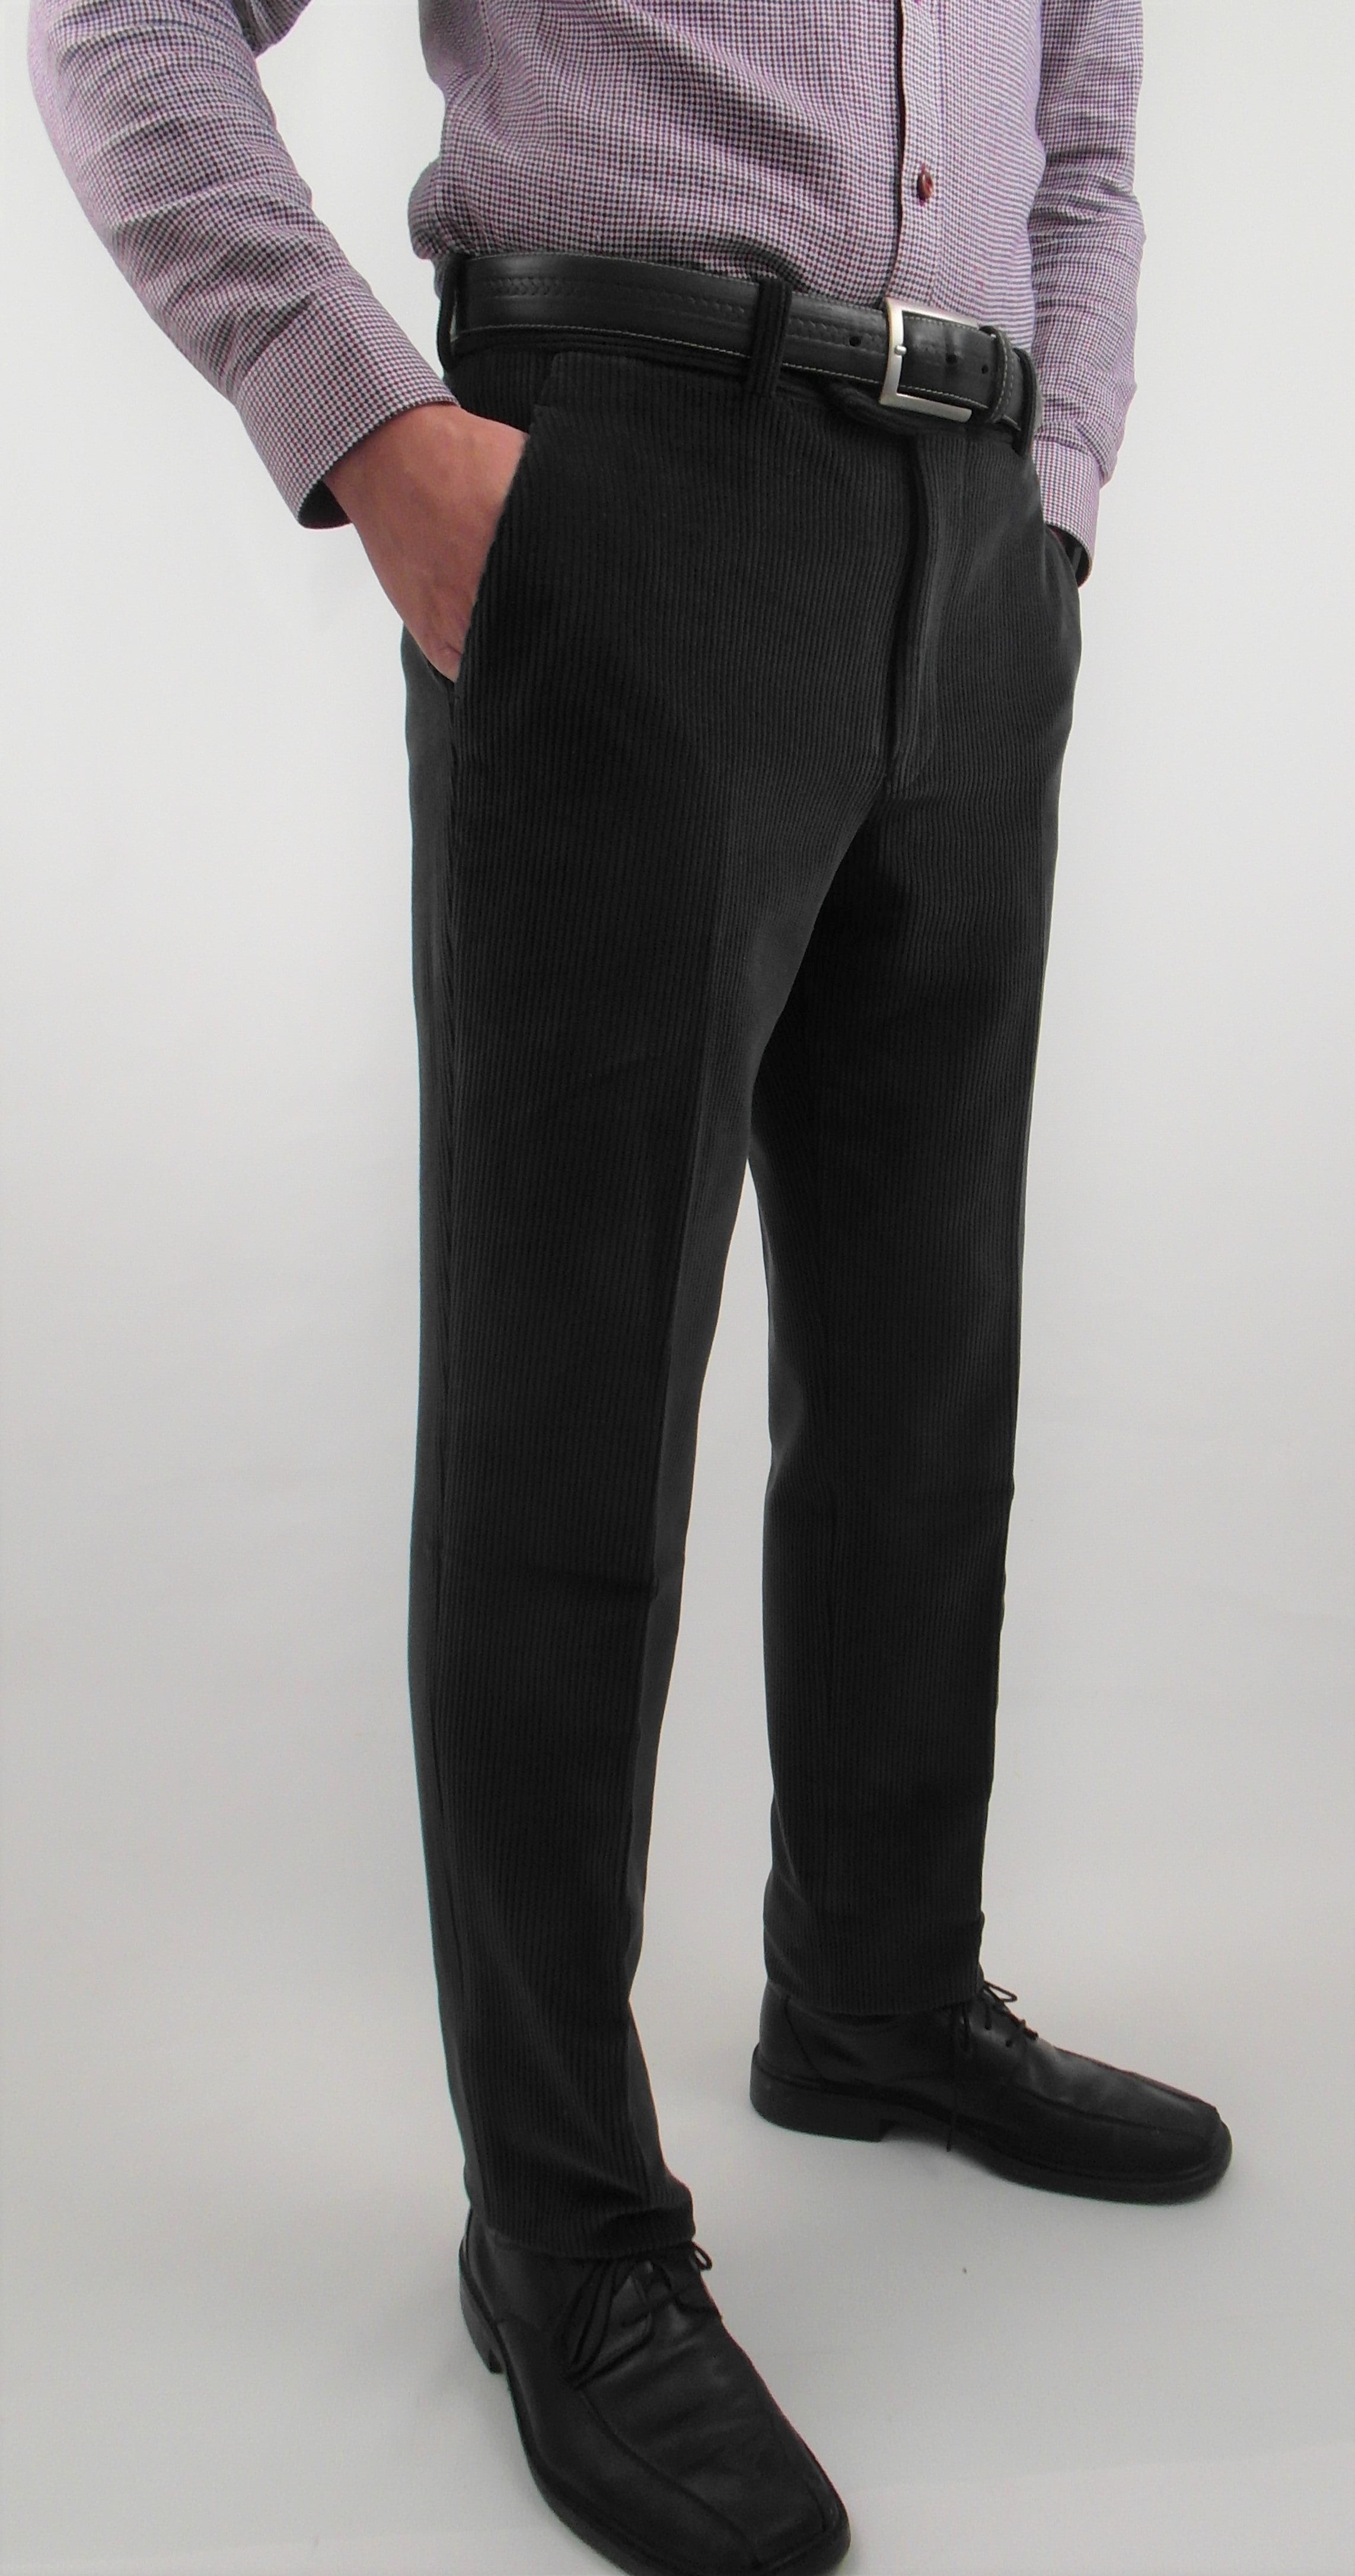 POLO RALPH LAUREN Men's Stretch Classic Fit Corduroy Pants | eBay